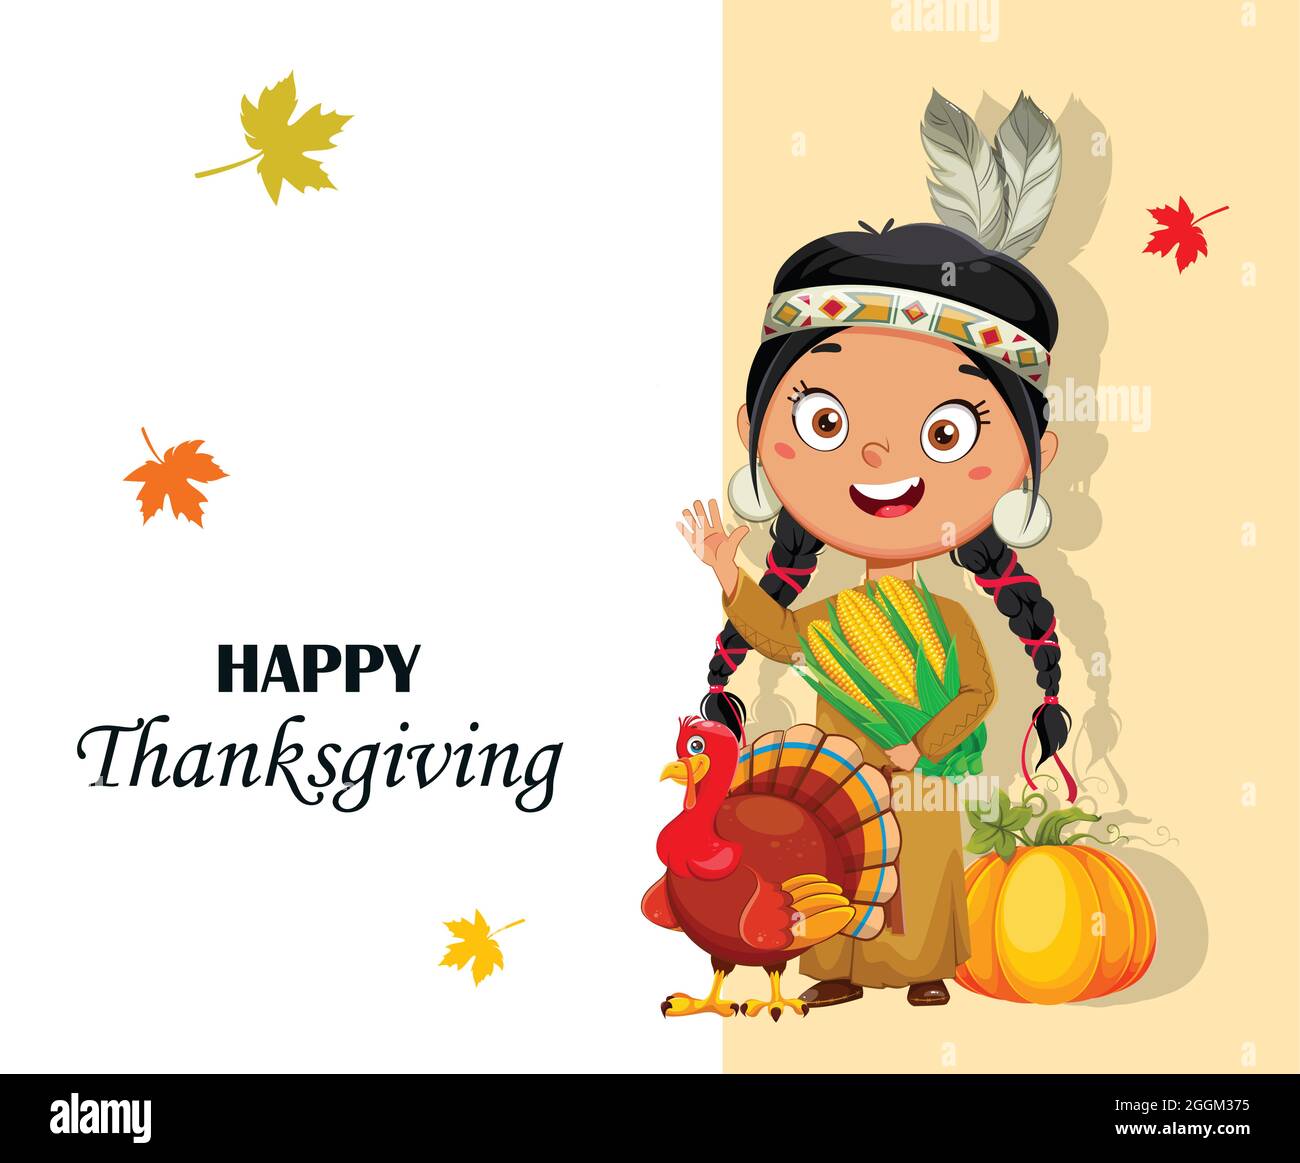 Thanksgiving-Tag Grußkarte mit indianischen Mädchen. Niedliche Zeichentrickfigur. Vektorgrafik für Aktien Stock Vektor